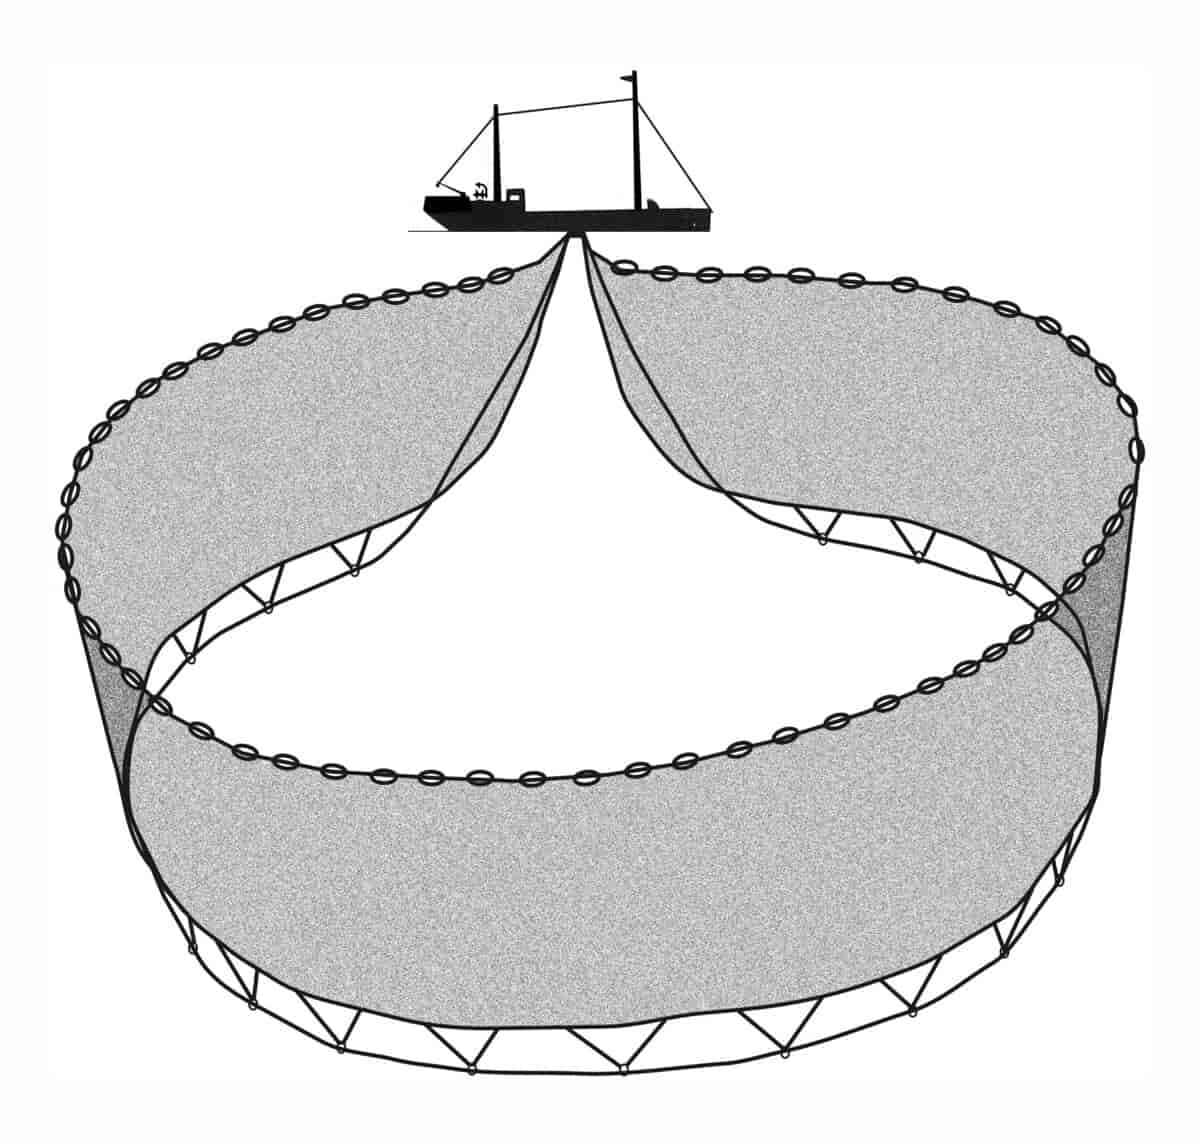 En stor ring med fiskegarn ligger spredt under en båt. I bunnen og toppen av fiskegarnet er det tau som  vil snurpe noten sammen. 